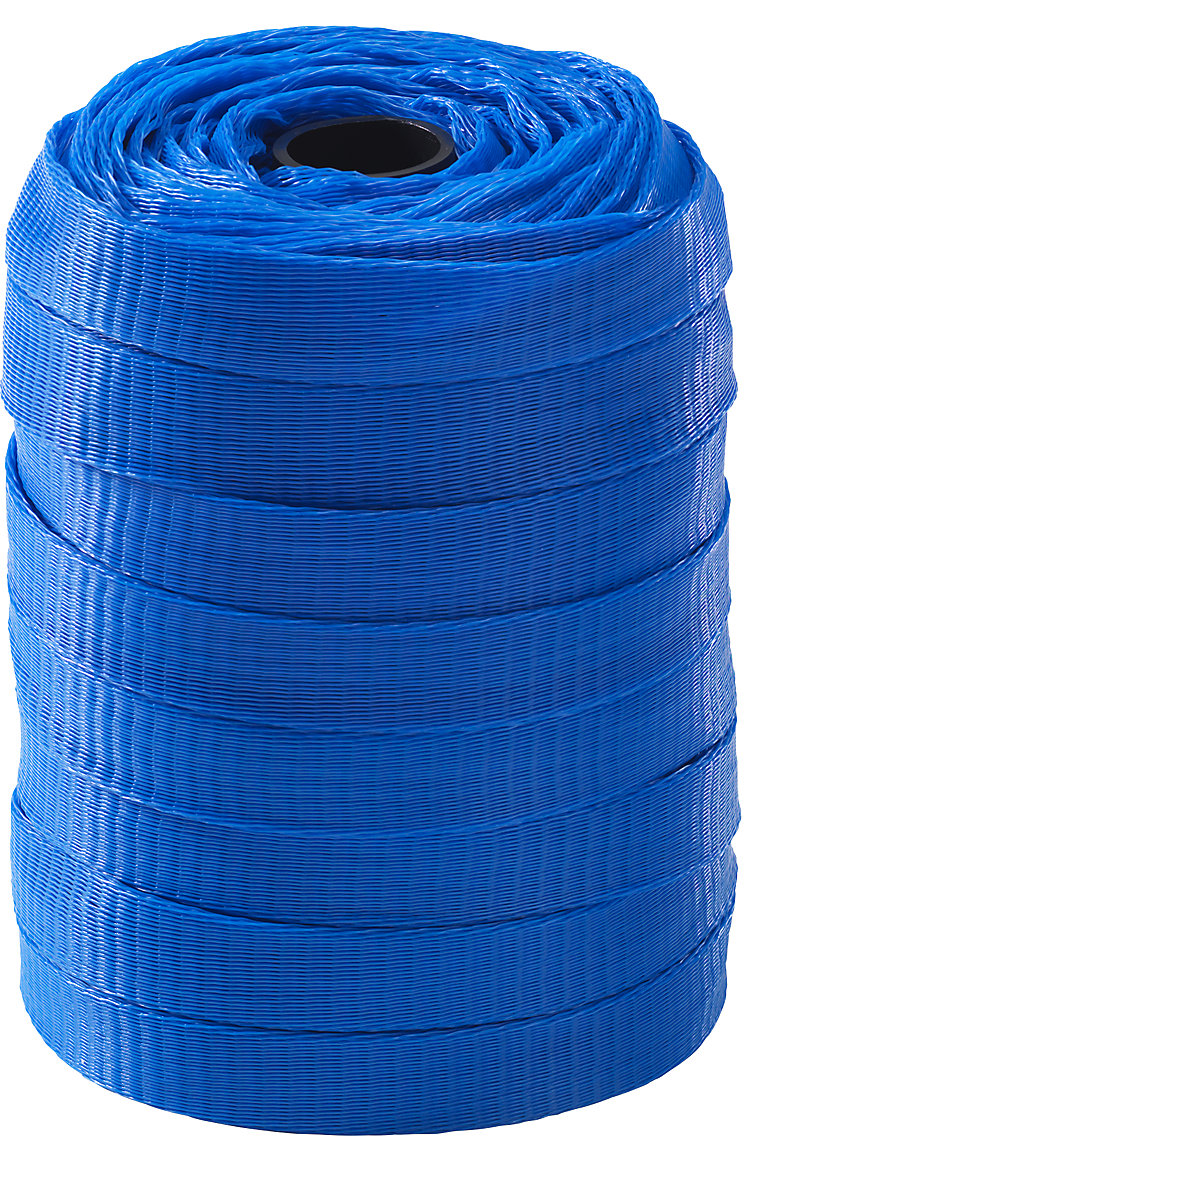 Filet de protection, polyéthylène, 1 rouleau, bleu, pour Ø 80 – 120 mm